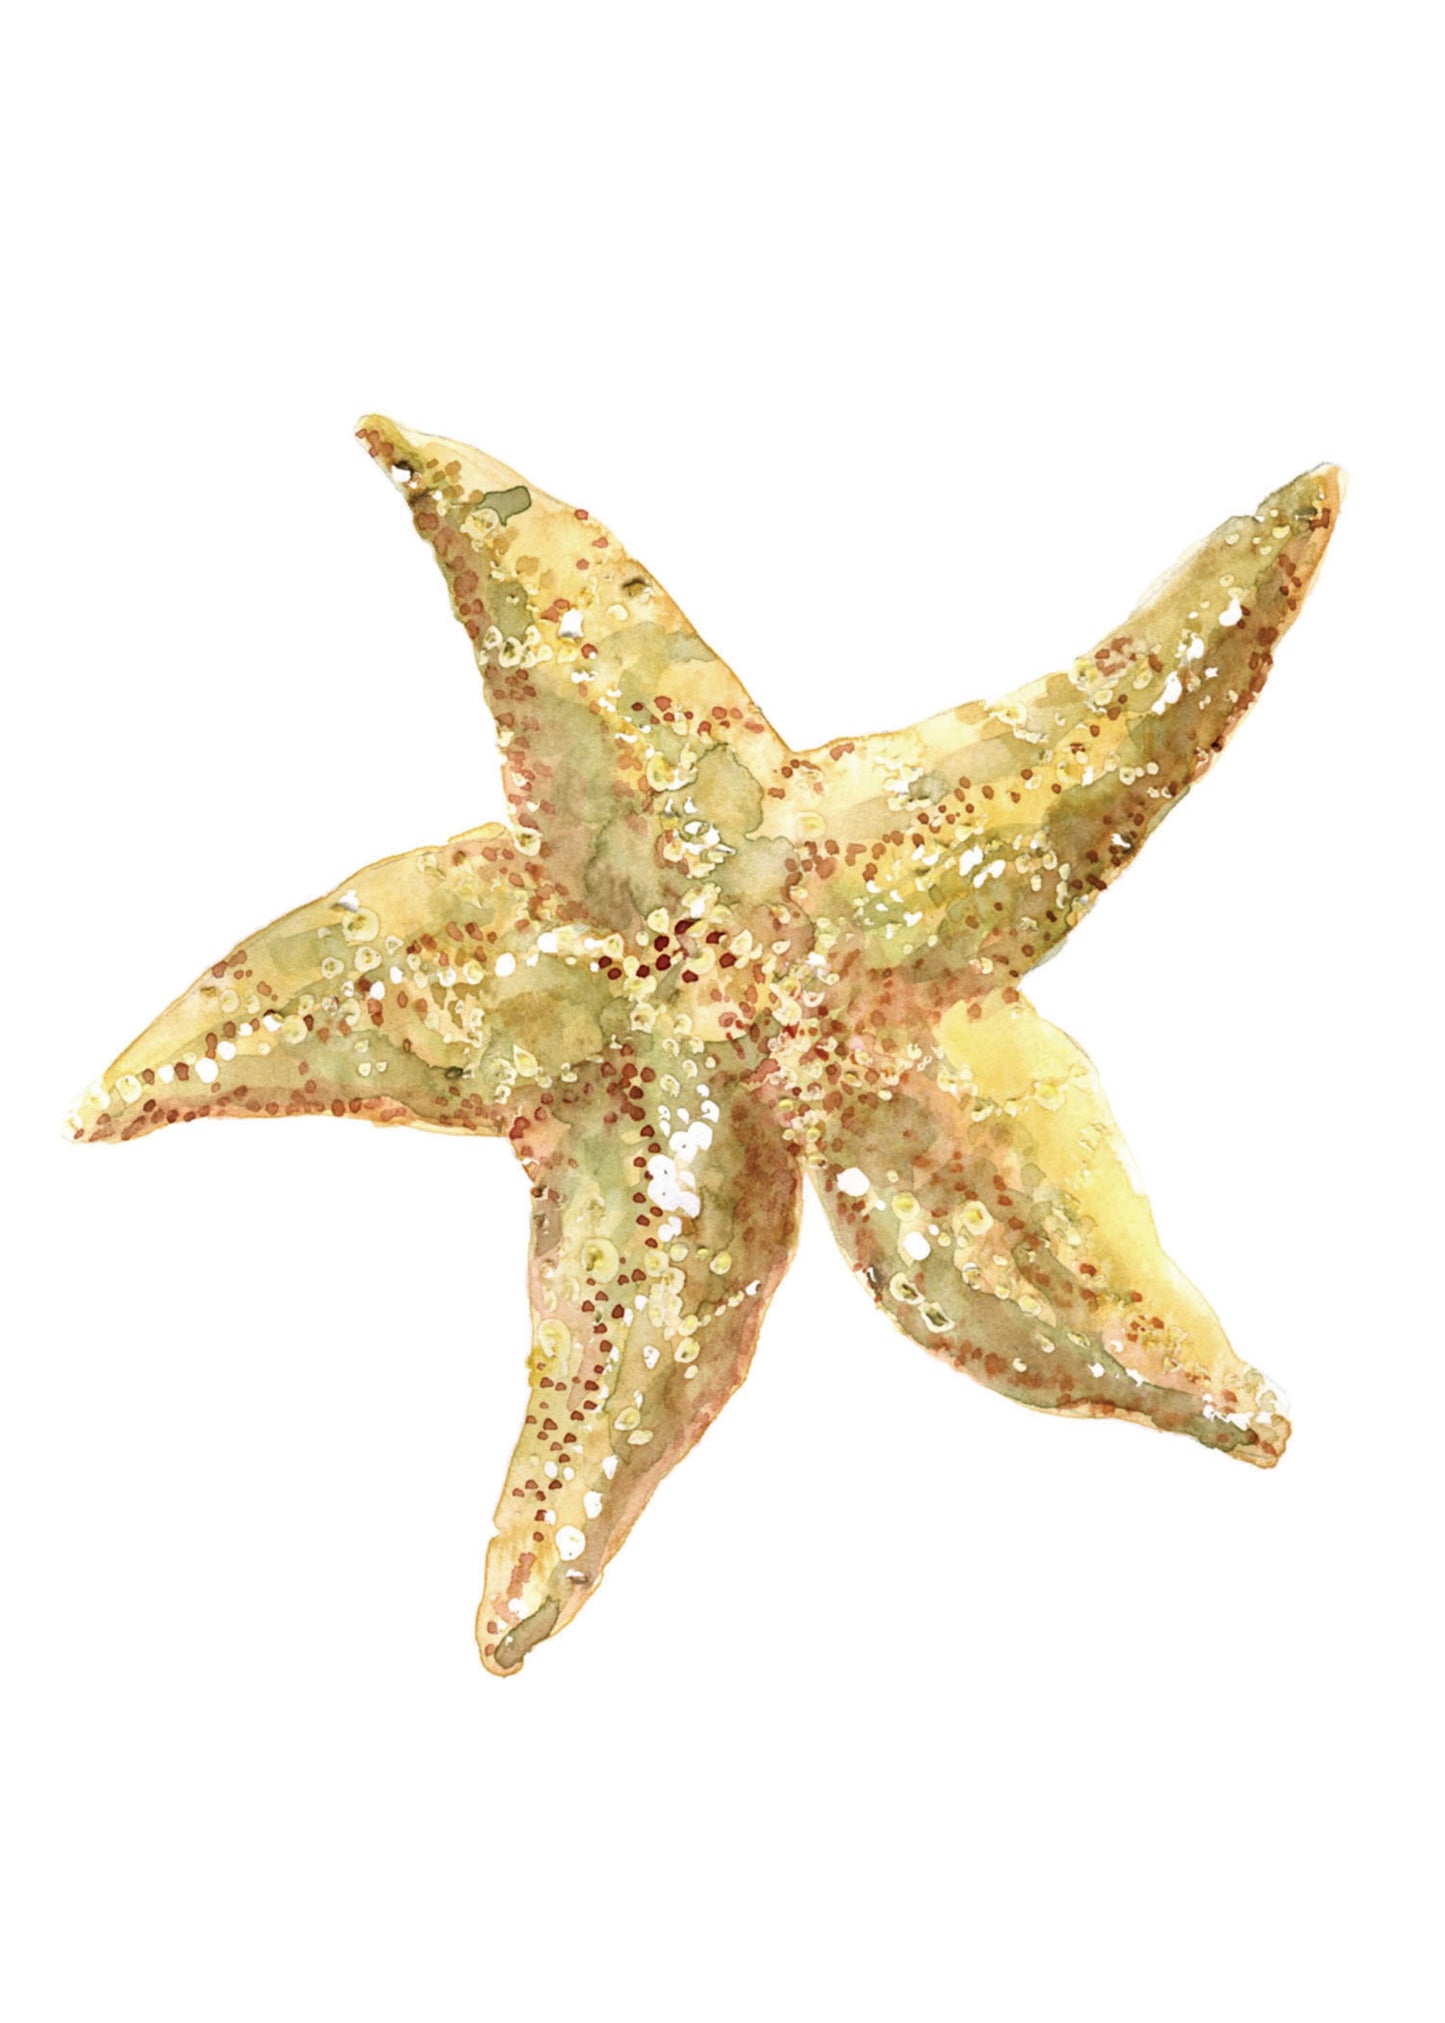 Starfish WHITE FRAME - Flamingo Shores - Original Art for Home Decor and Gifts